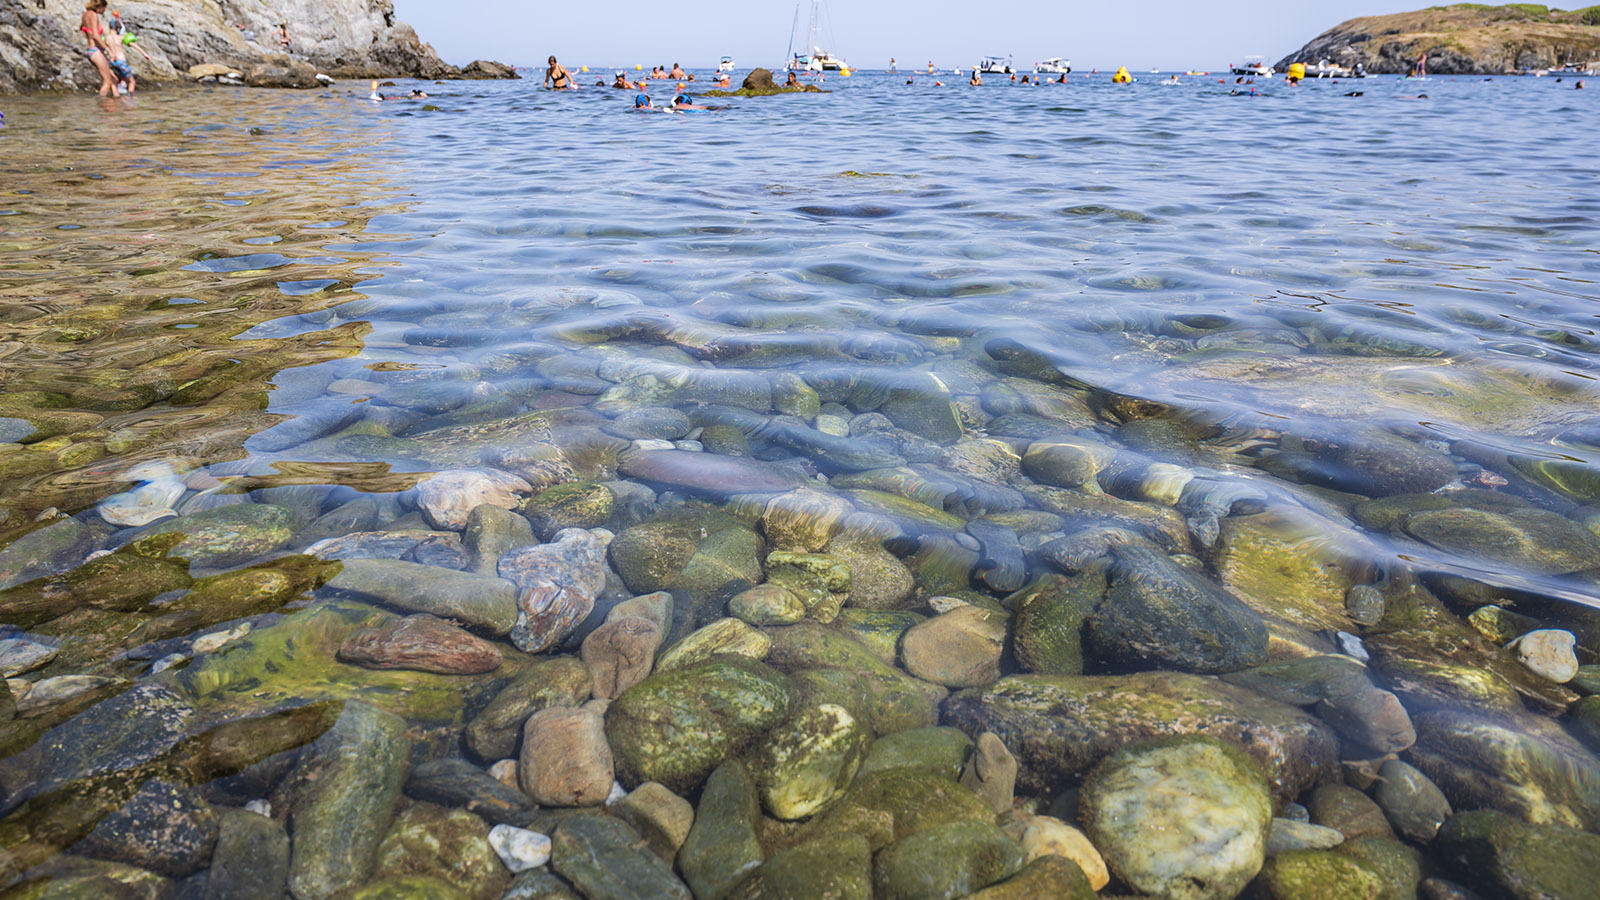 Glasklar ist das Wasser der Plage de Peyrefite. Die Fische kommen bis an den Strand! Foto: Hilke Maunder